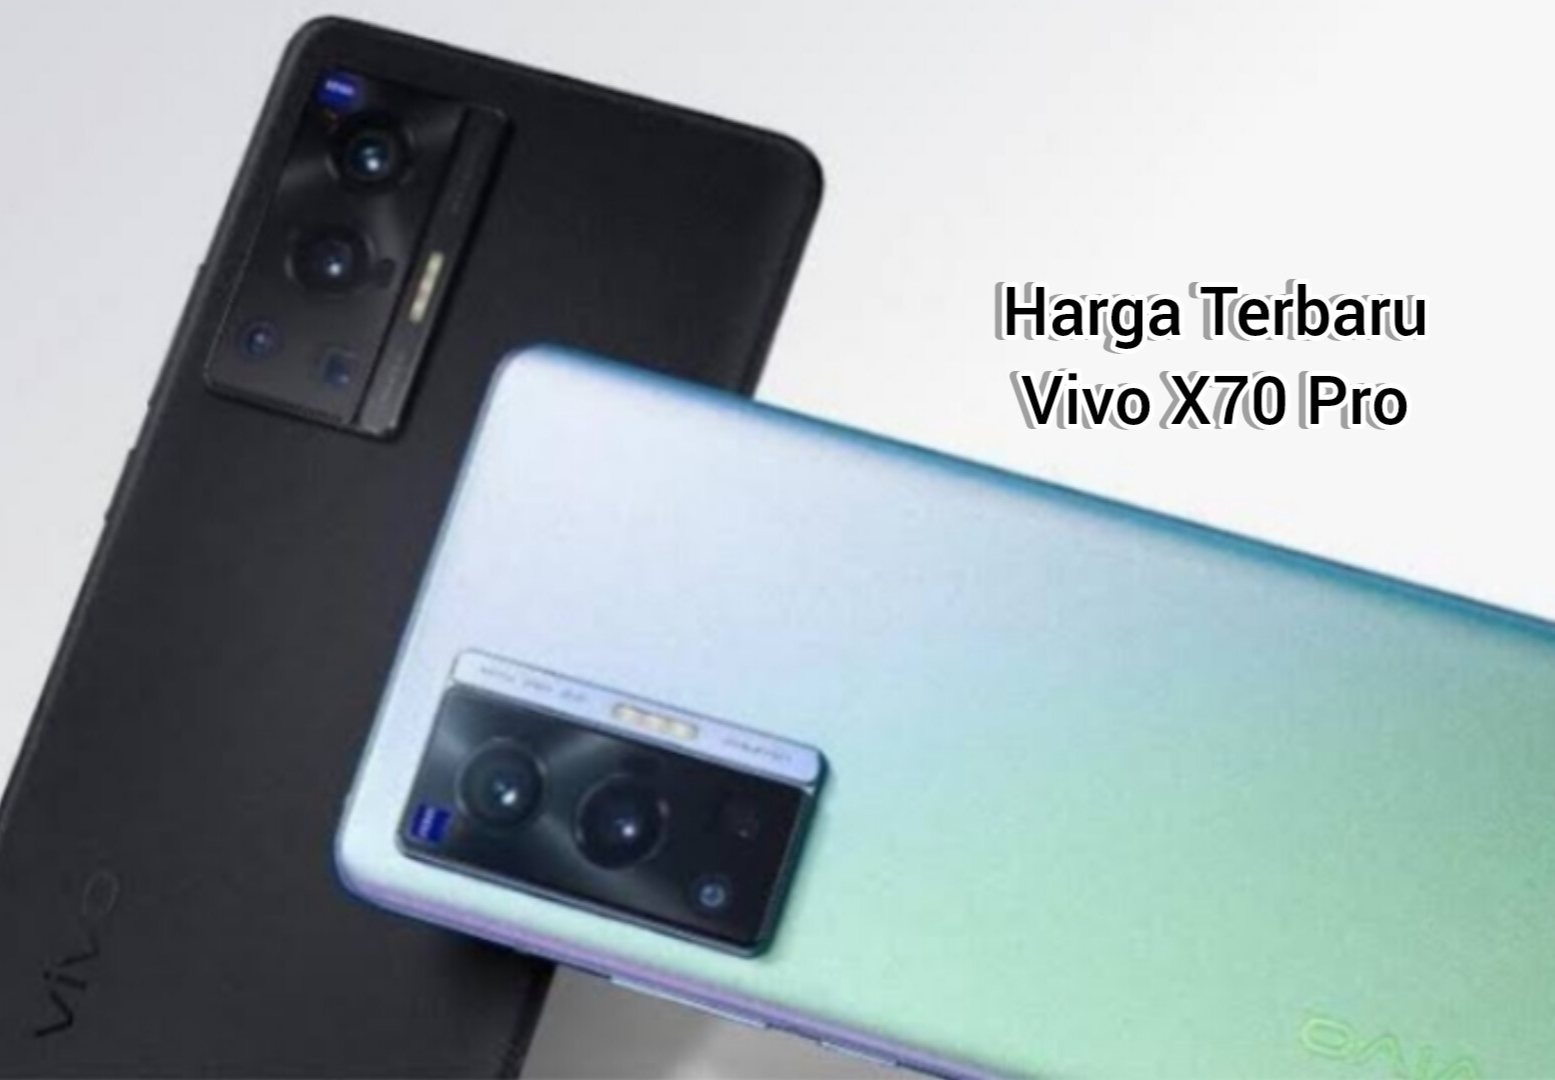 Update Harga Terbaru HP Vivo X70 Pro, Bodi Slim dengan Kemampuan Fotografi Unggul